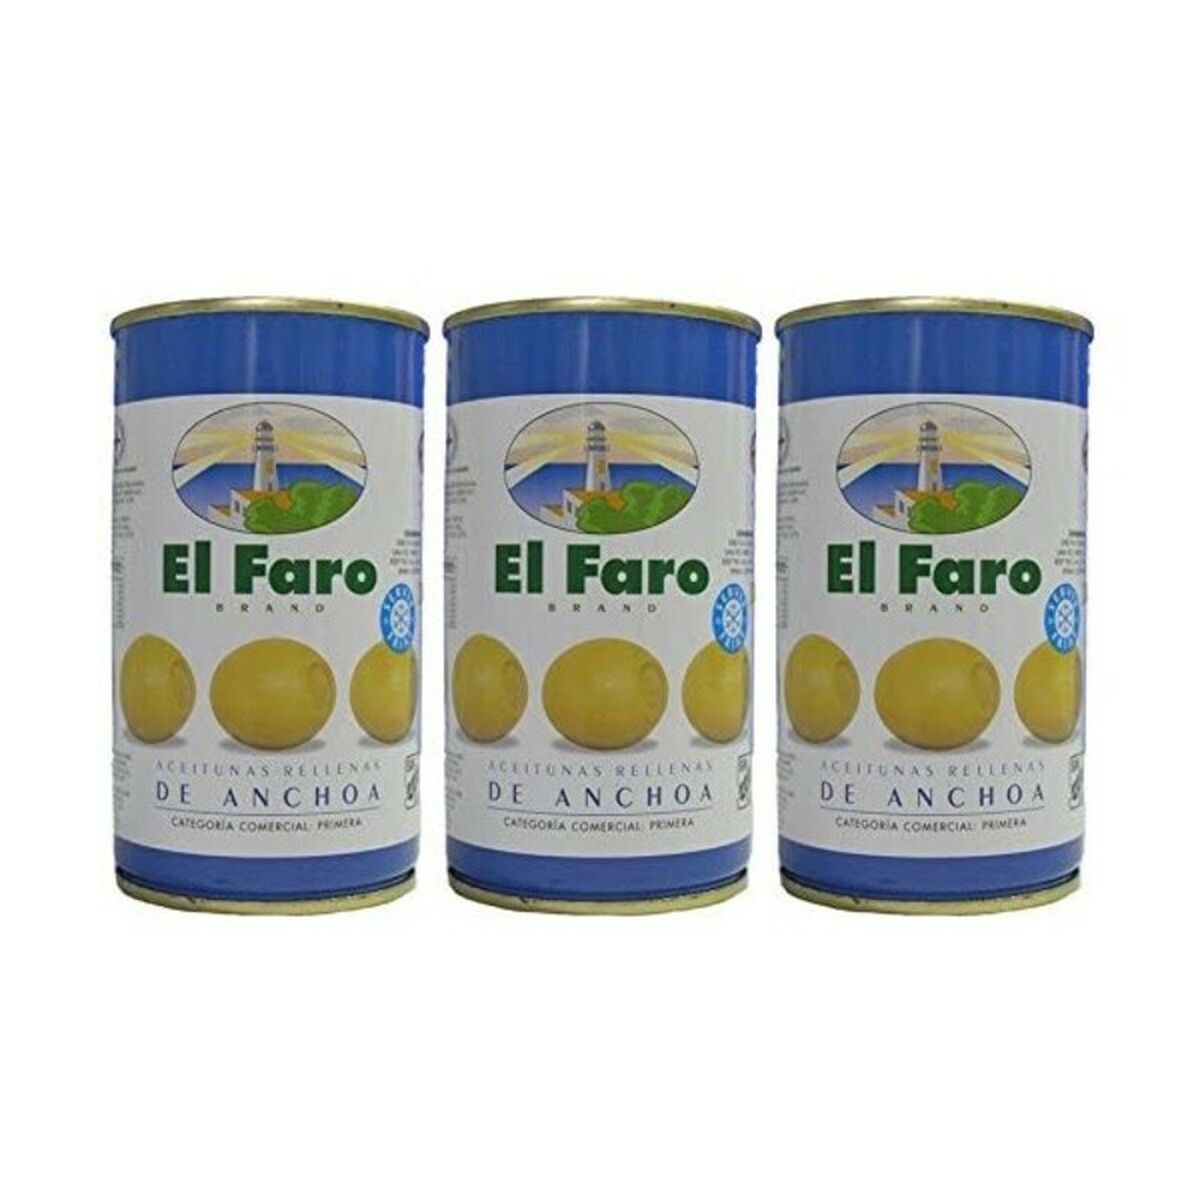 Olive El Faro Ripieno di acciughe (3 x 50 g)